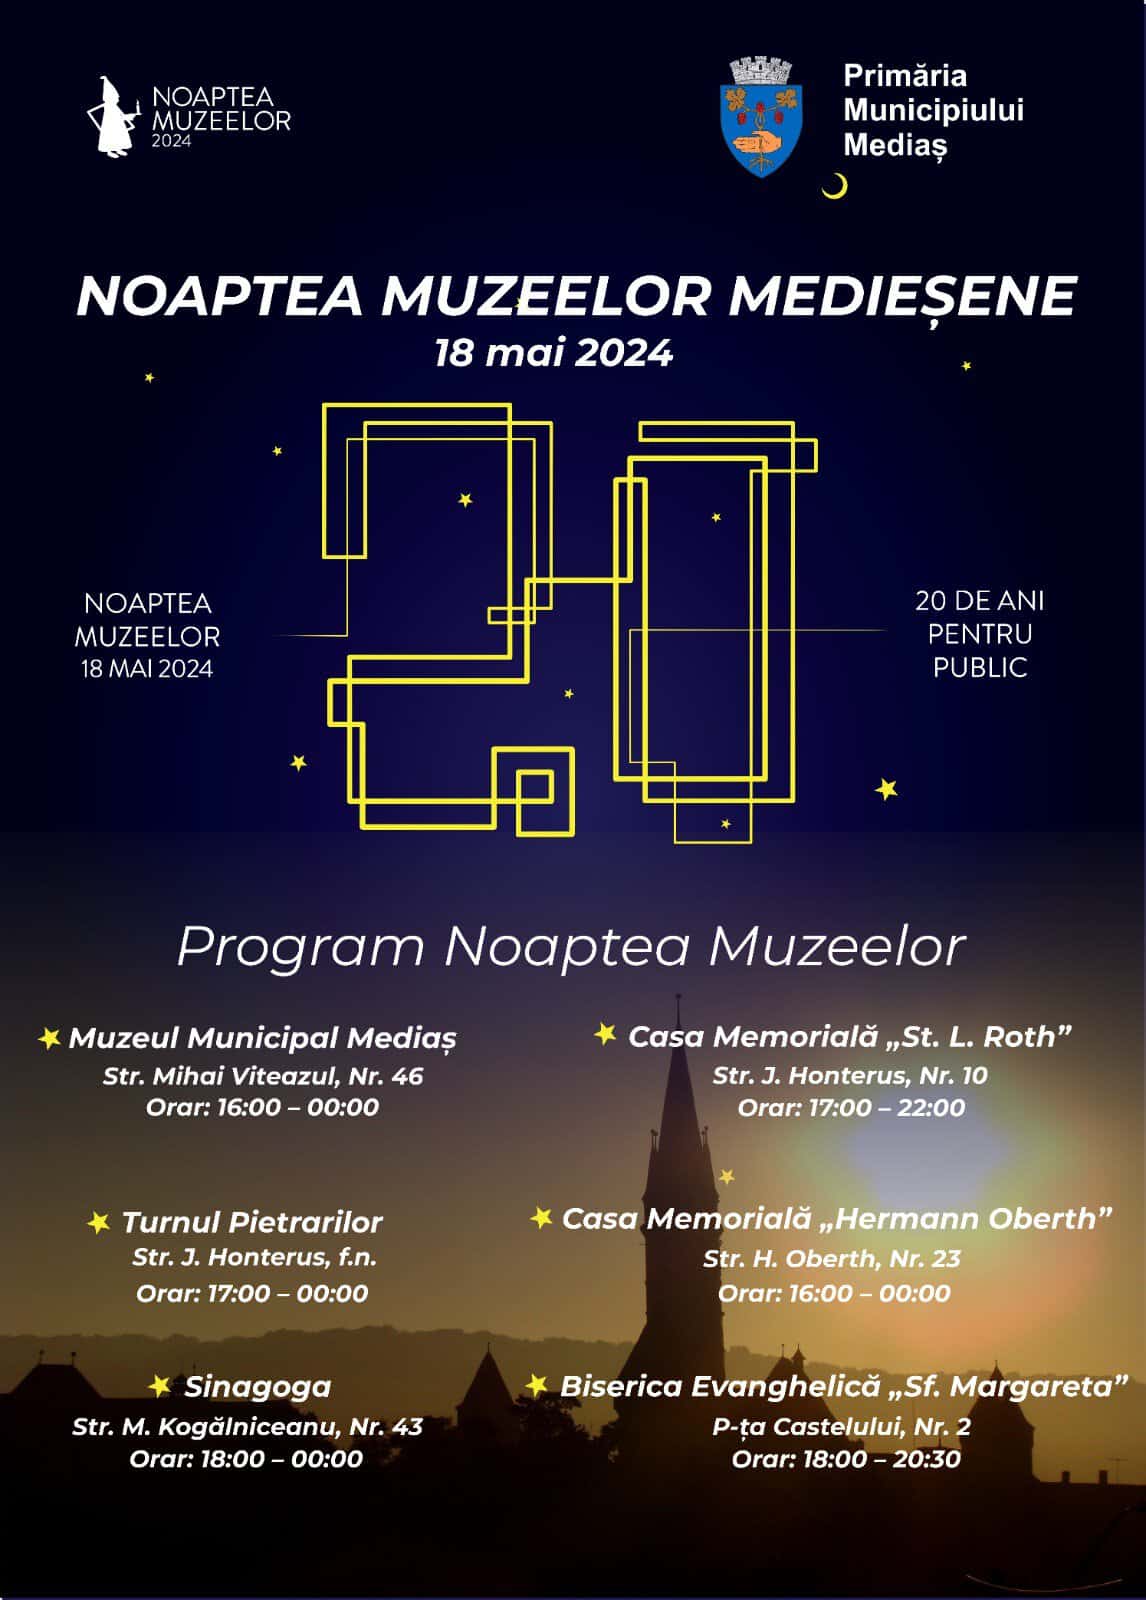 programul evenimentelor organizate de noaptea muzeelor 2024 la mediaș (video)